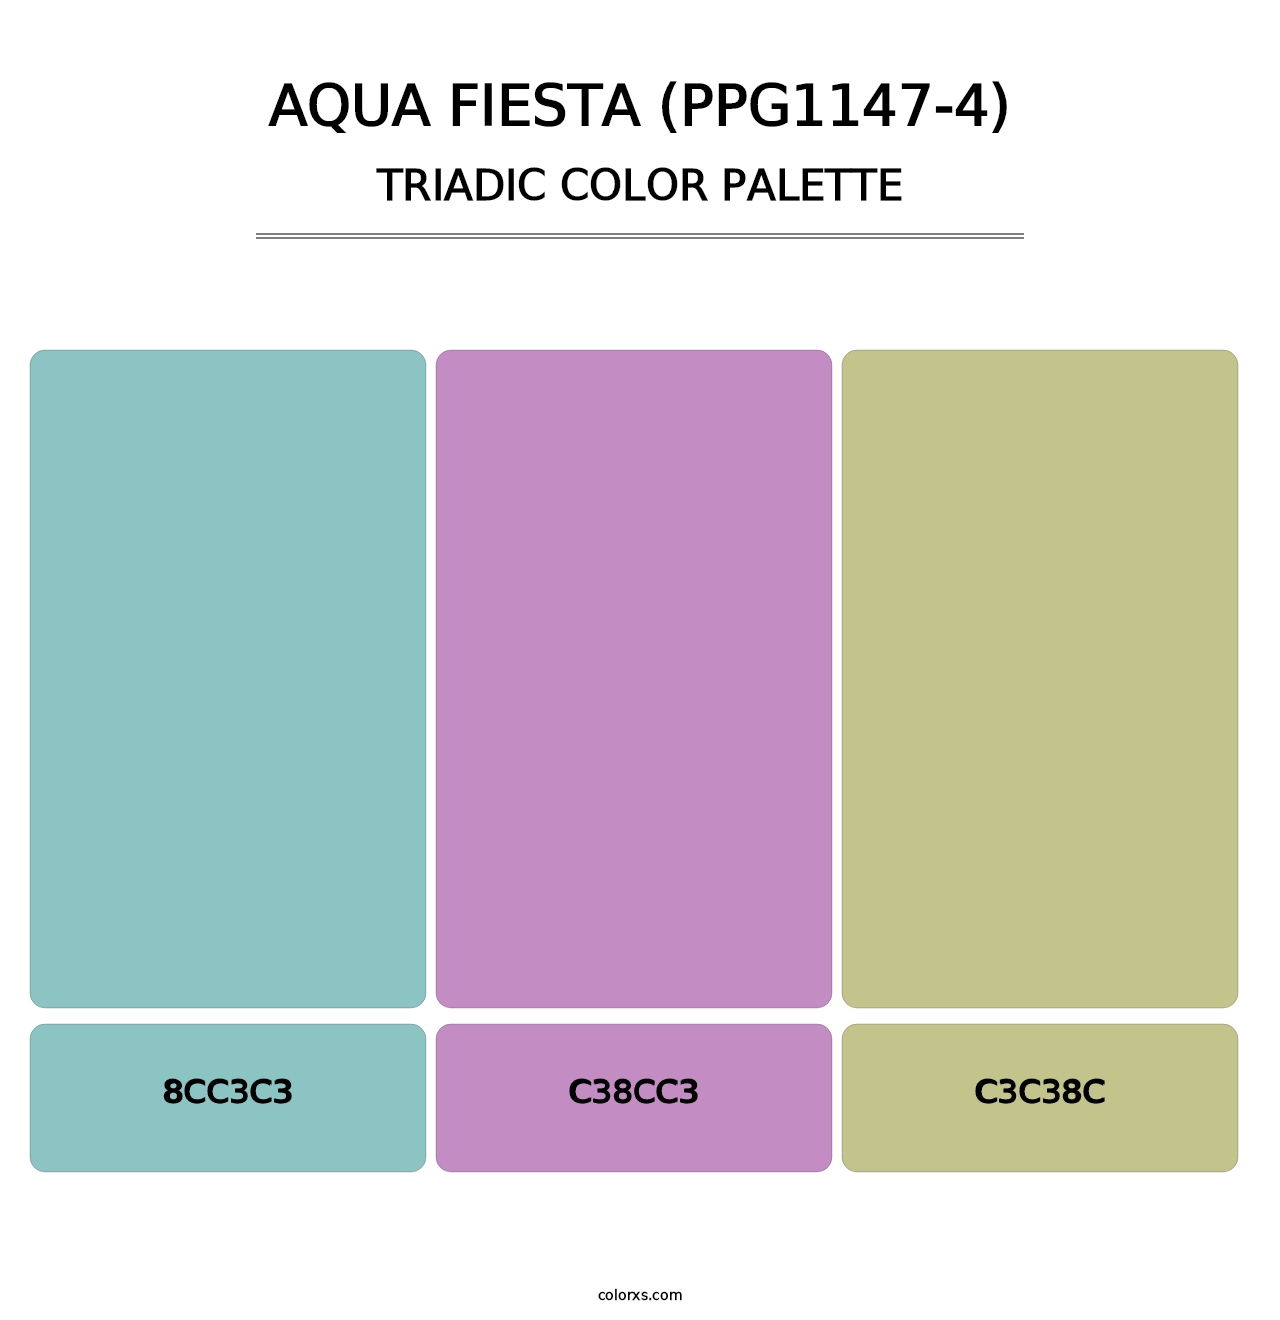 Aqua Fiesta (PPG1147-4) - Triadic Color Palette